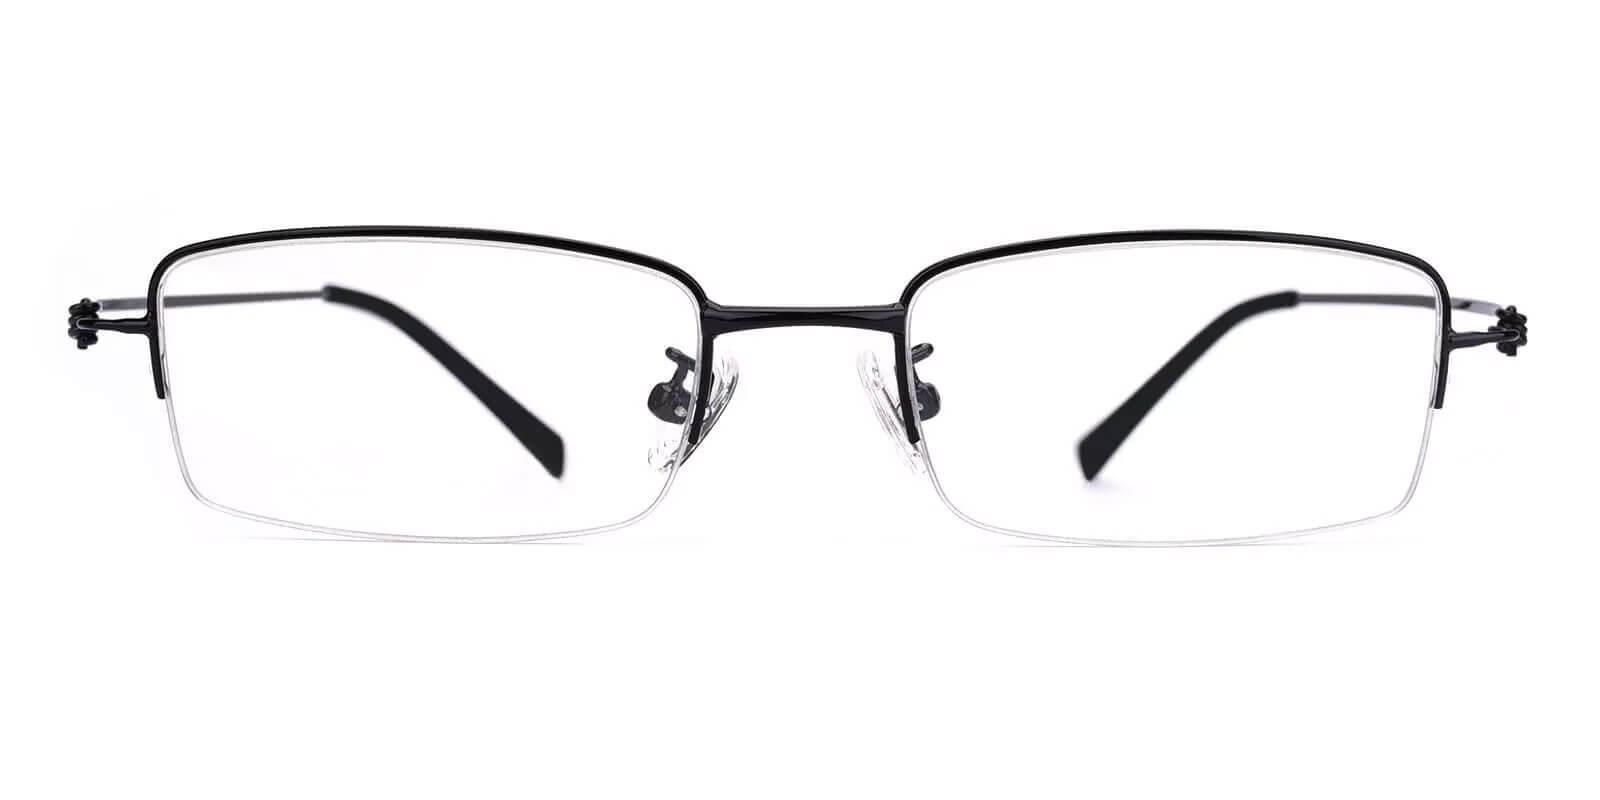 Chris Black Metal Eyeglasses , NosePads Frames from ABBE Glasses